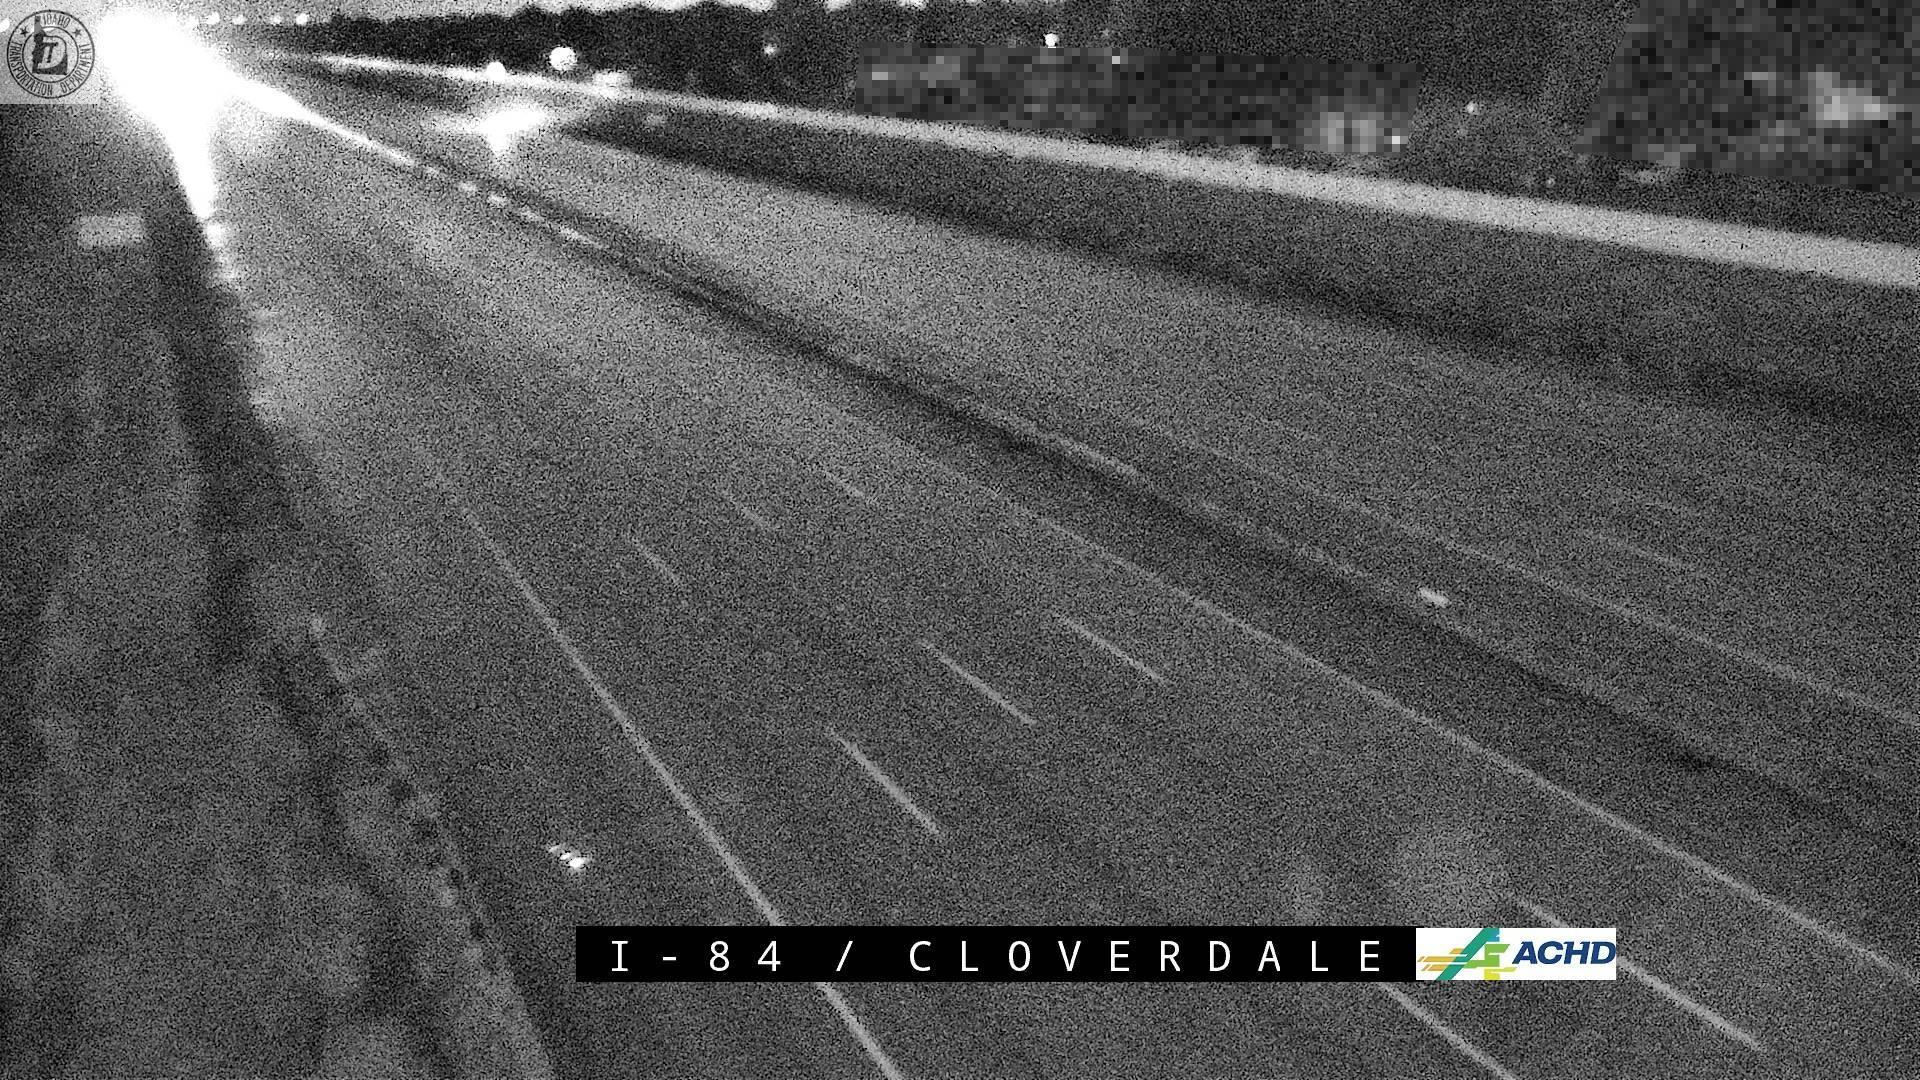 Boise: I-84: Cloverdale Rd Traffic Camera